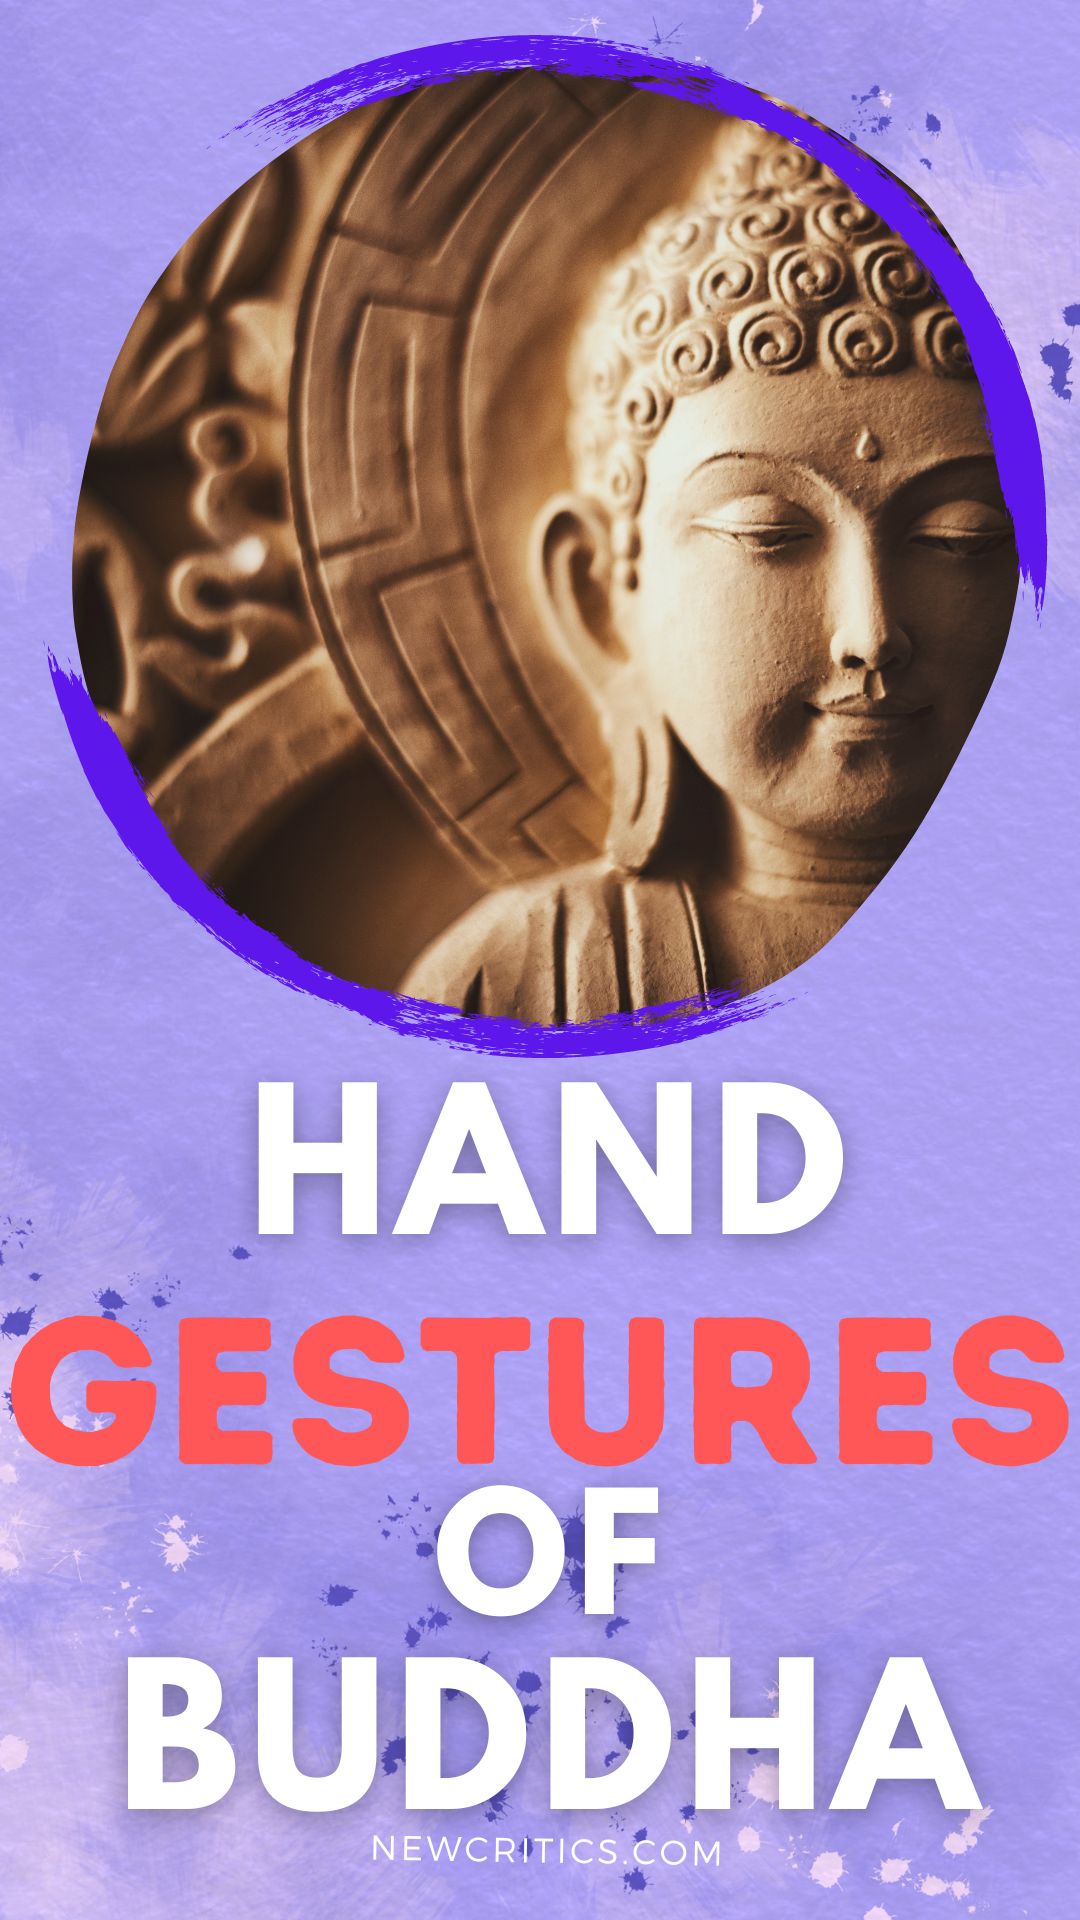 Handgestures Of Buddha / Canva